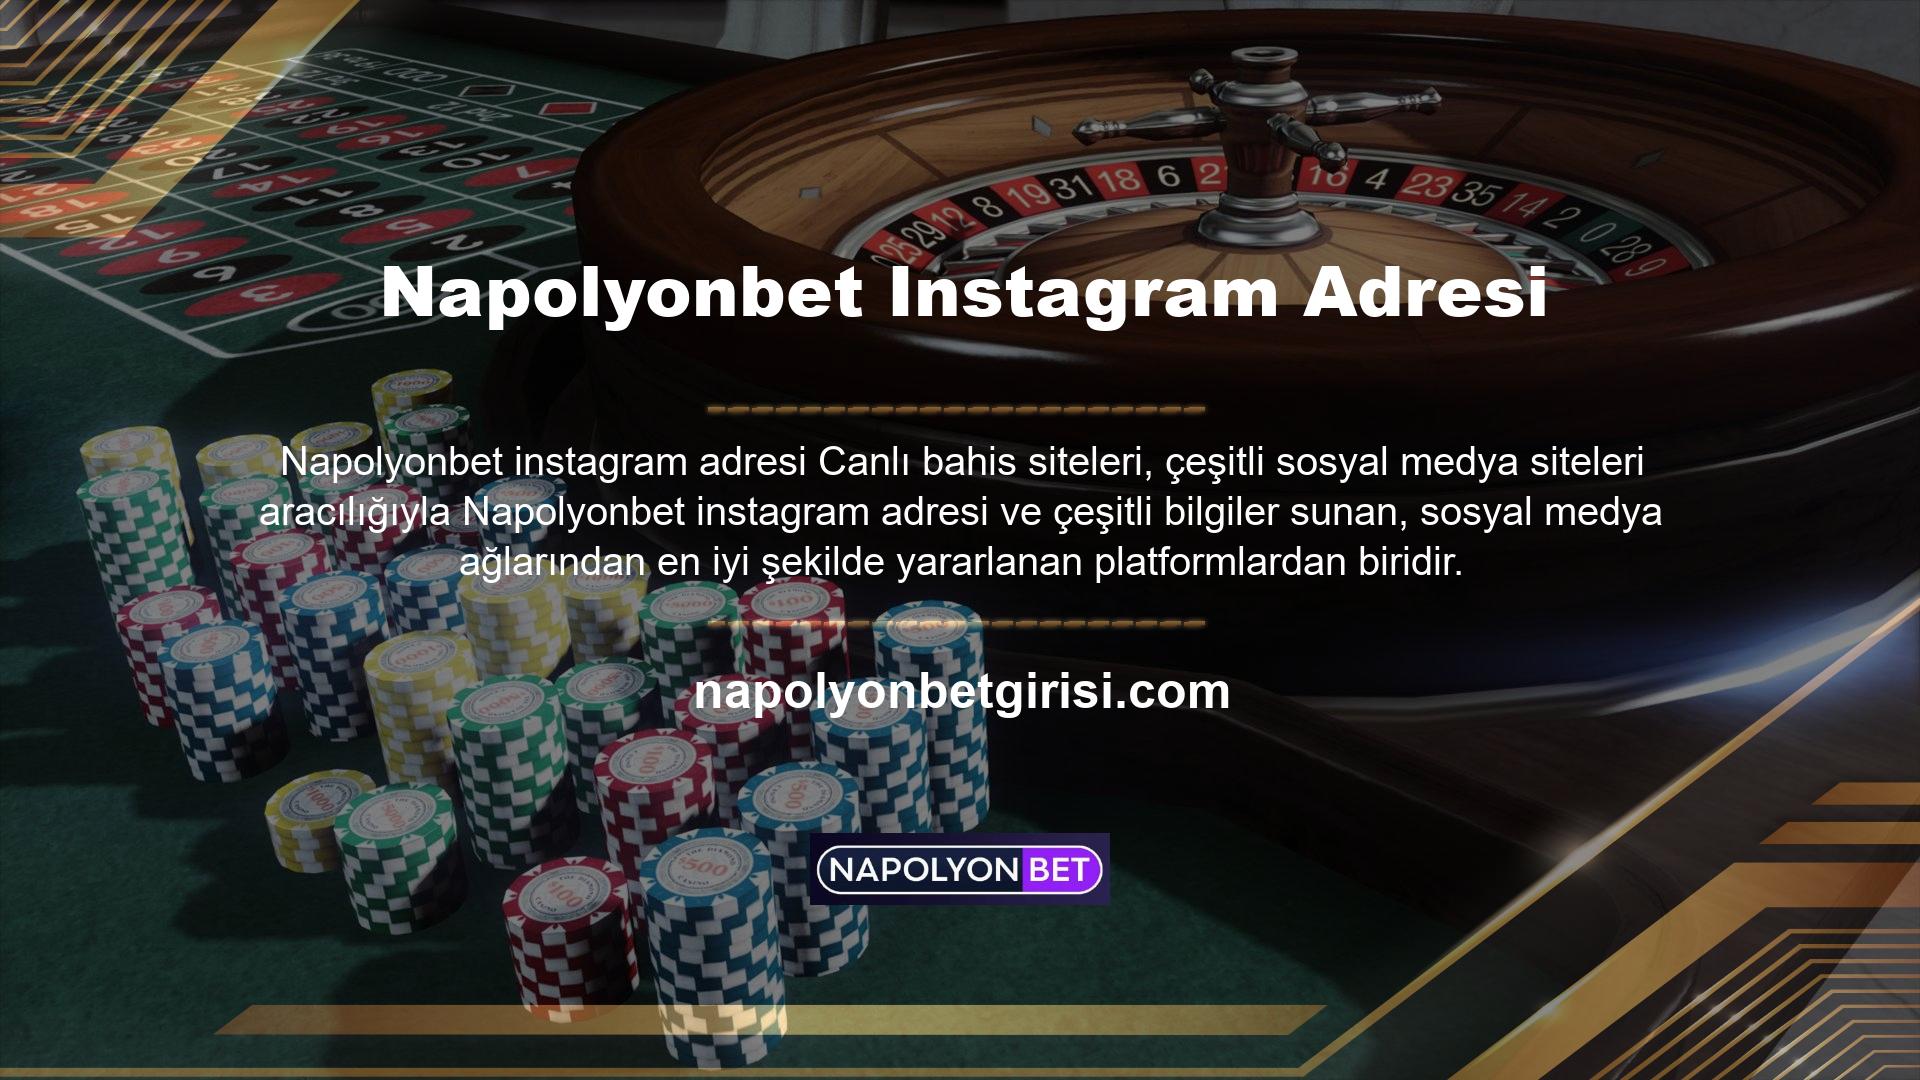 Napolyonbet Instagram adresi en basit sosyal medya kanalıdır